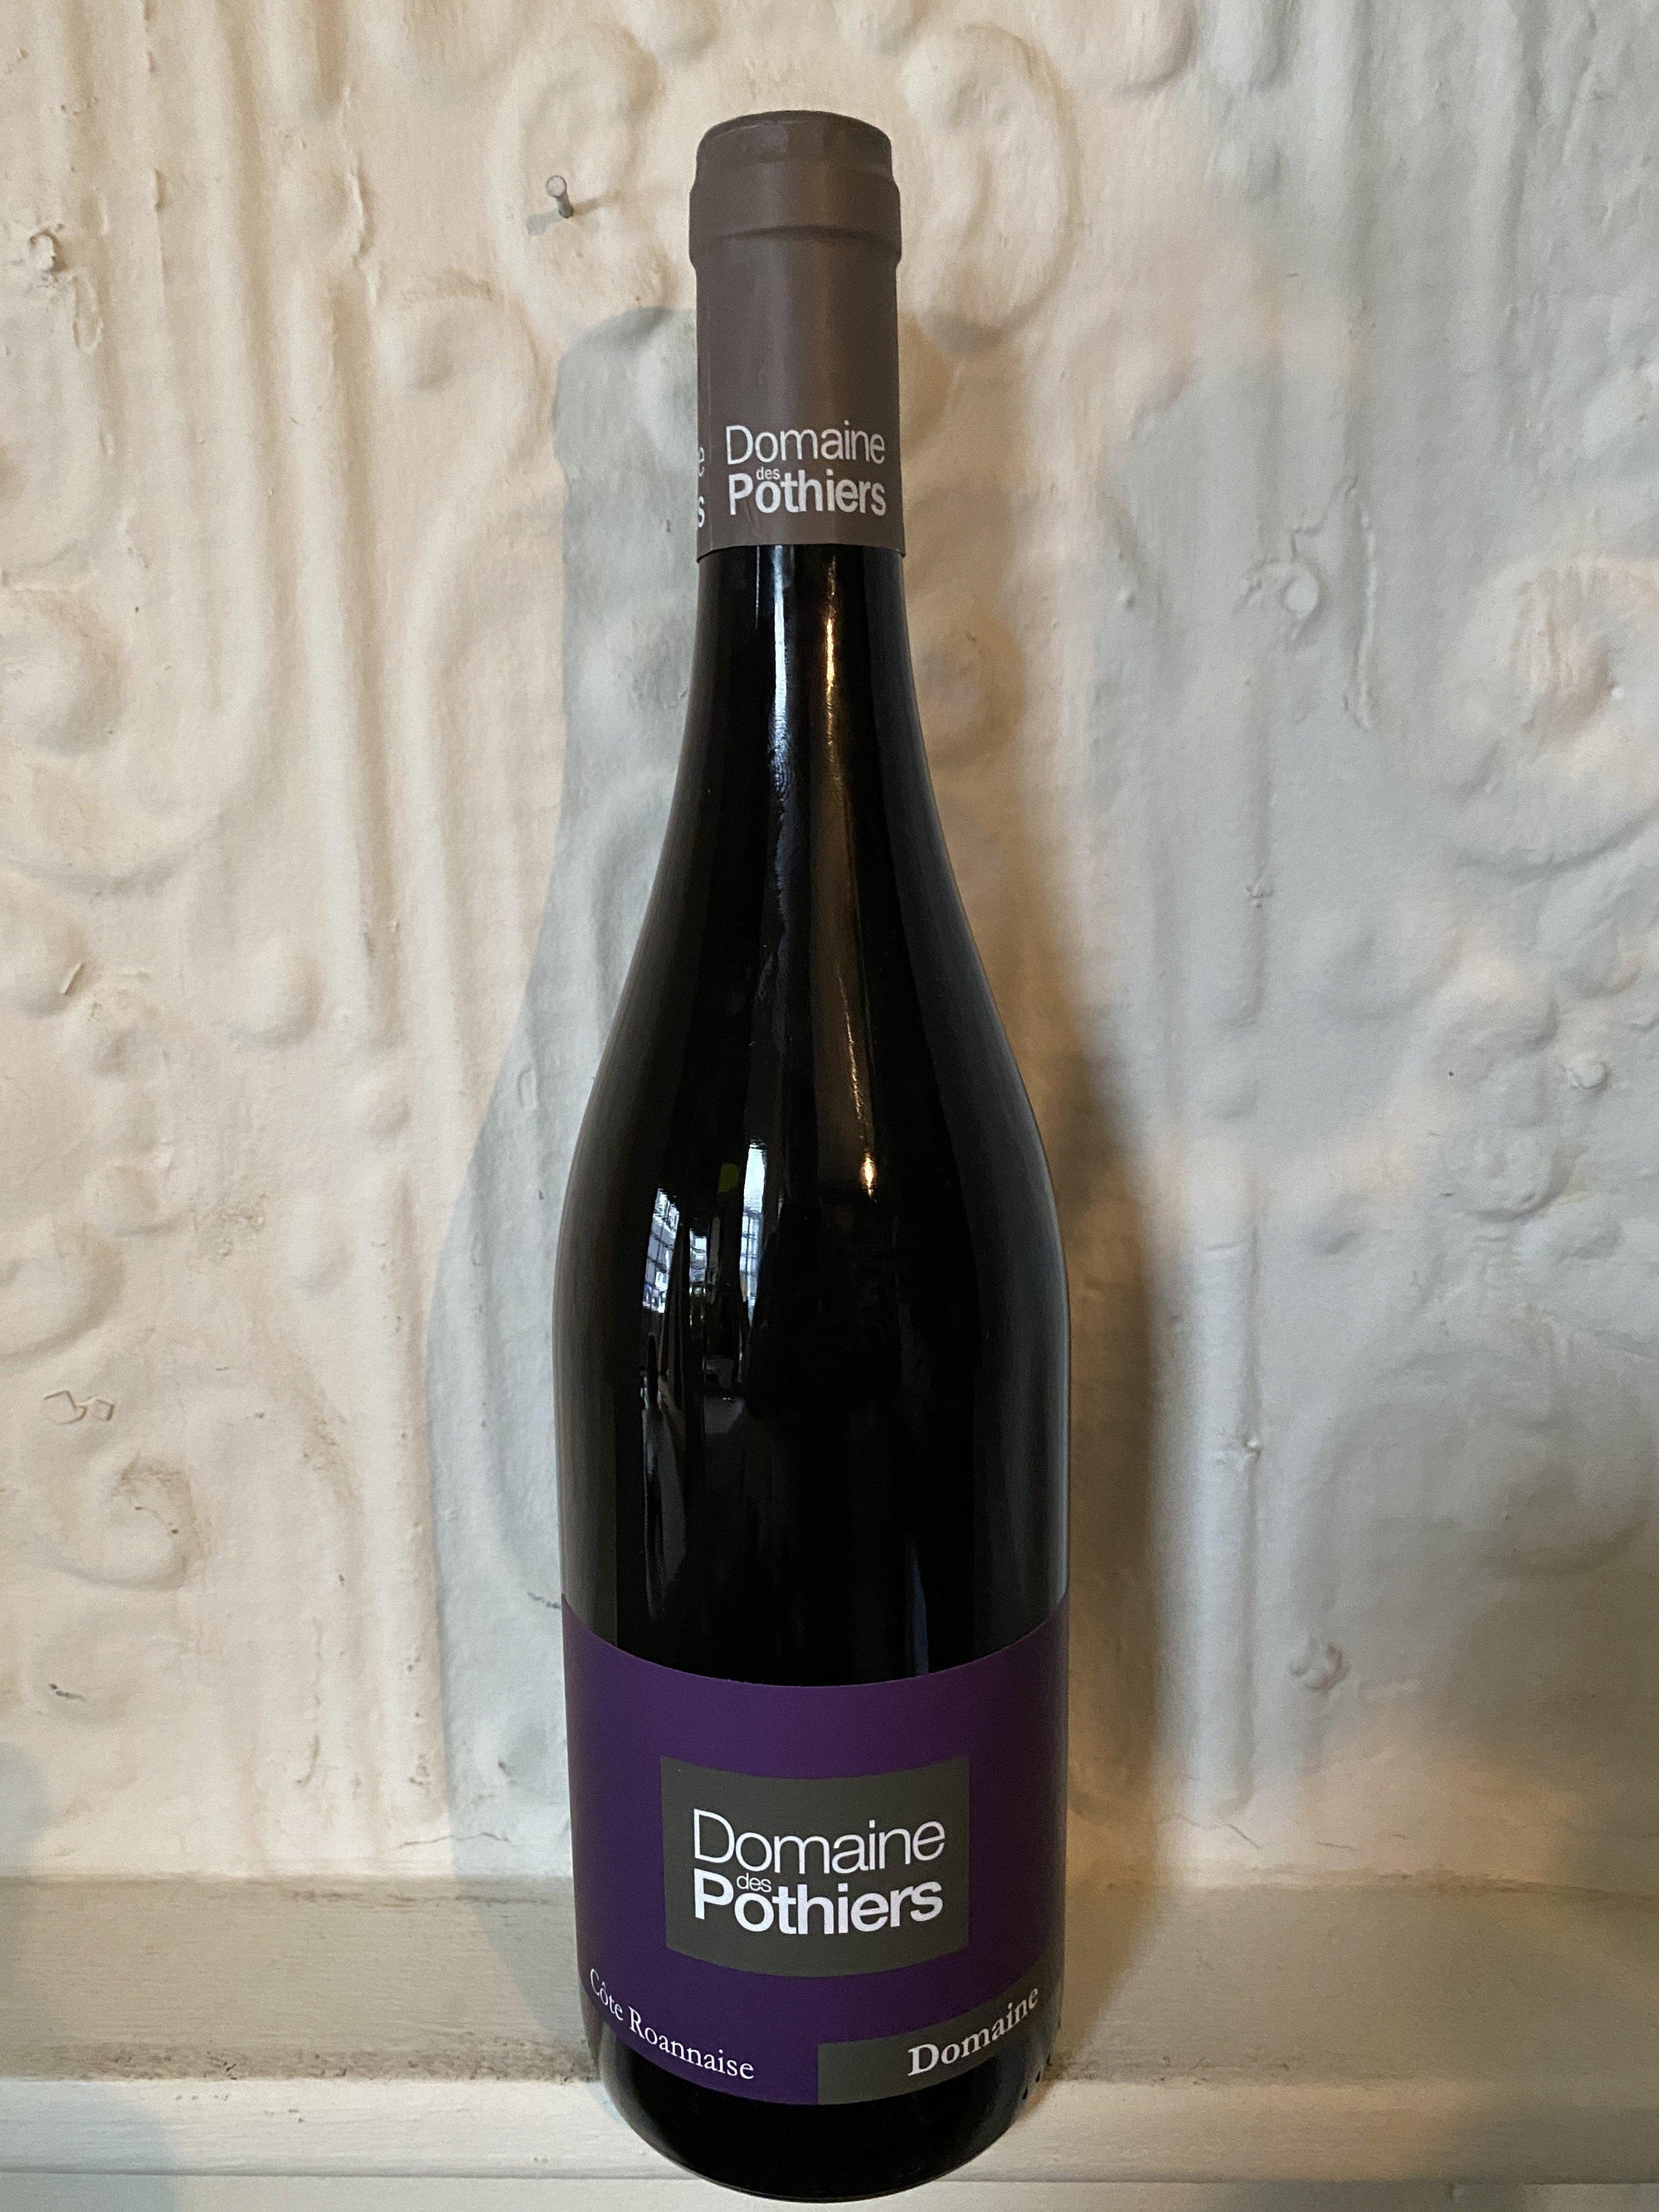 Domaine, Domaine des Pothiers 2018 (Loire Valley, France)-Wine-Bibber & Bell